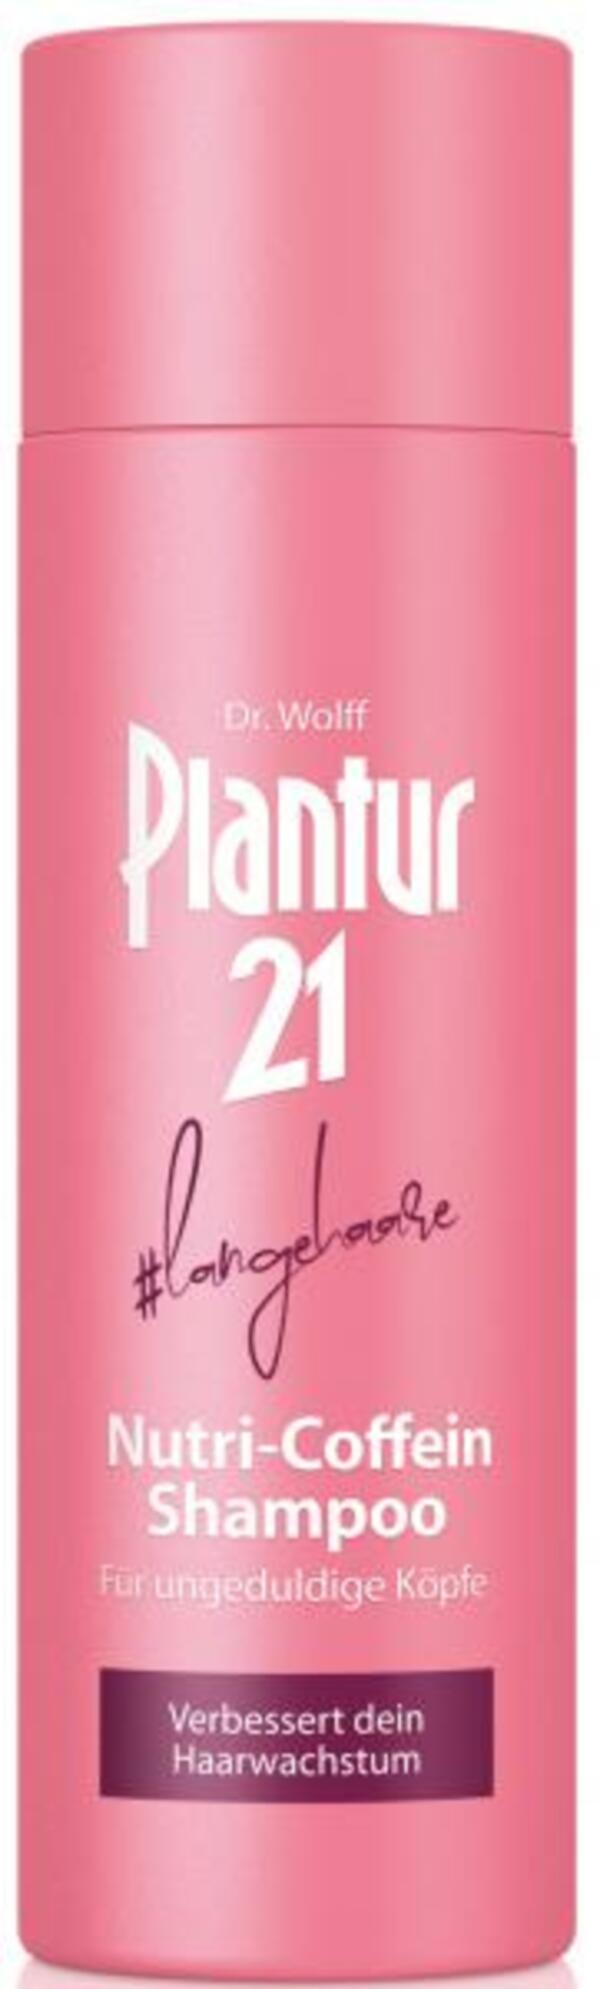 Bild 1 von Plantur 21 Nutri-Coffein Shampoo #langehaare